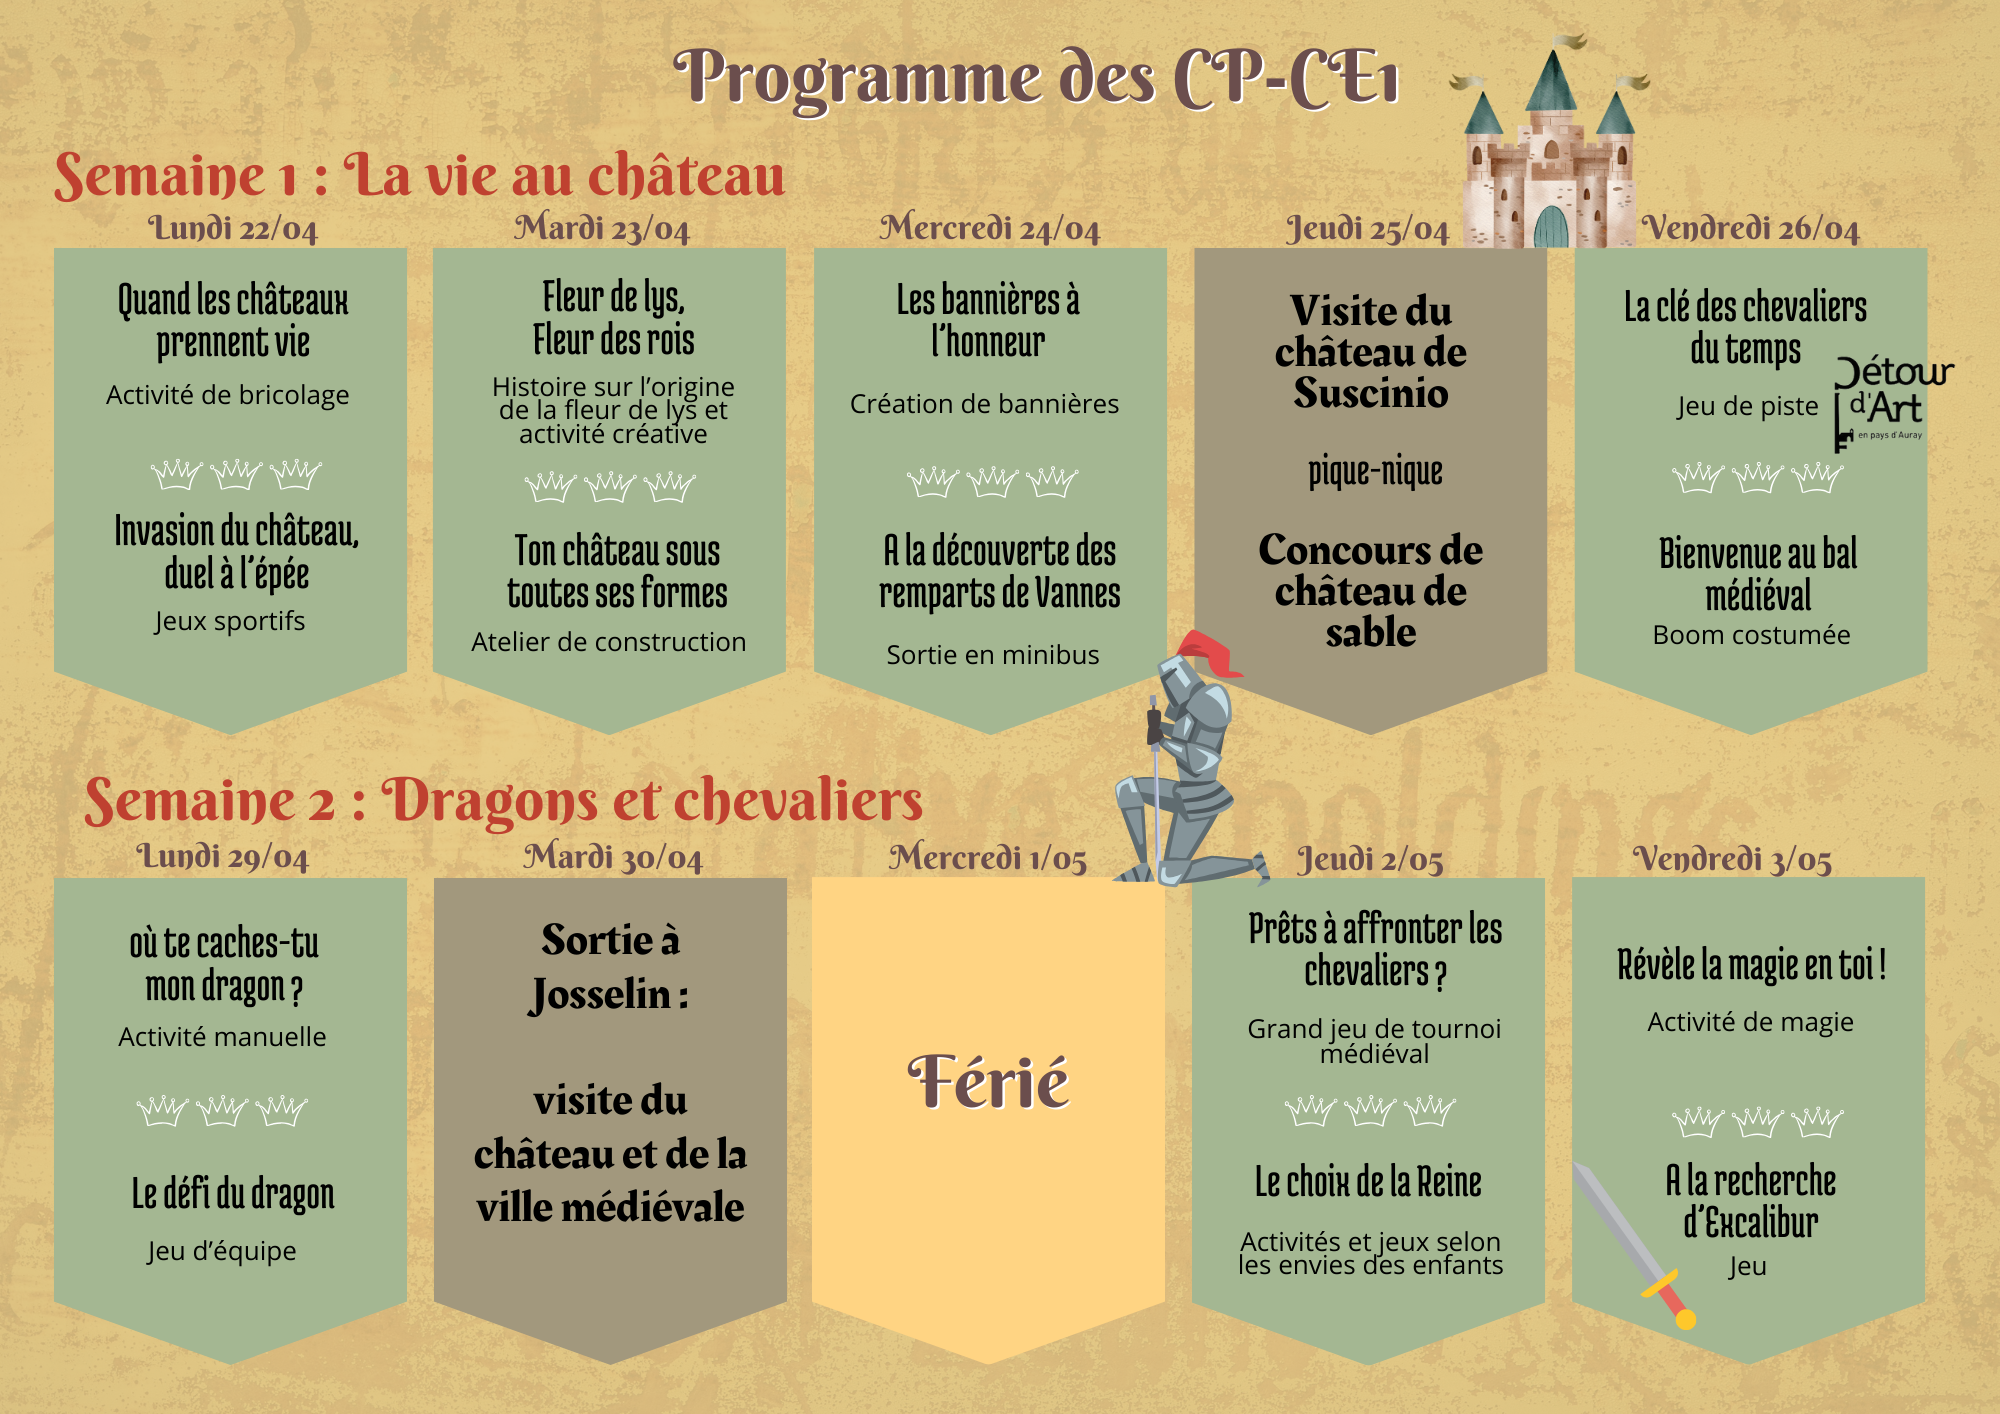 Programme des CP-CE1.png